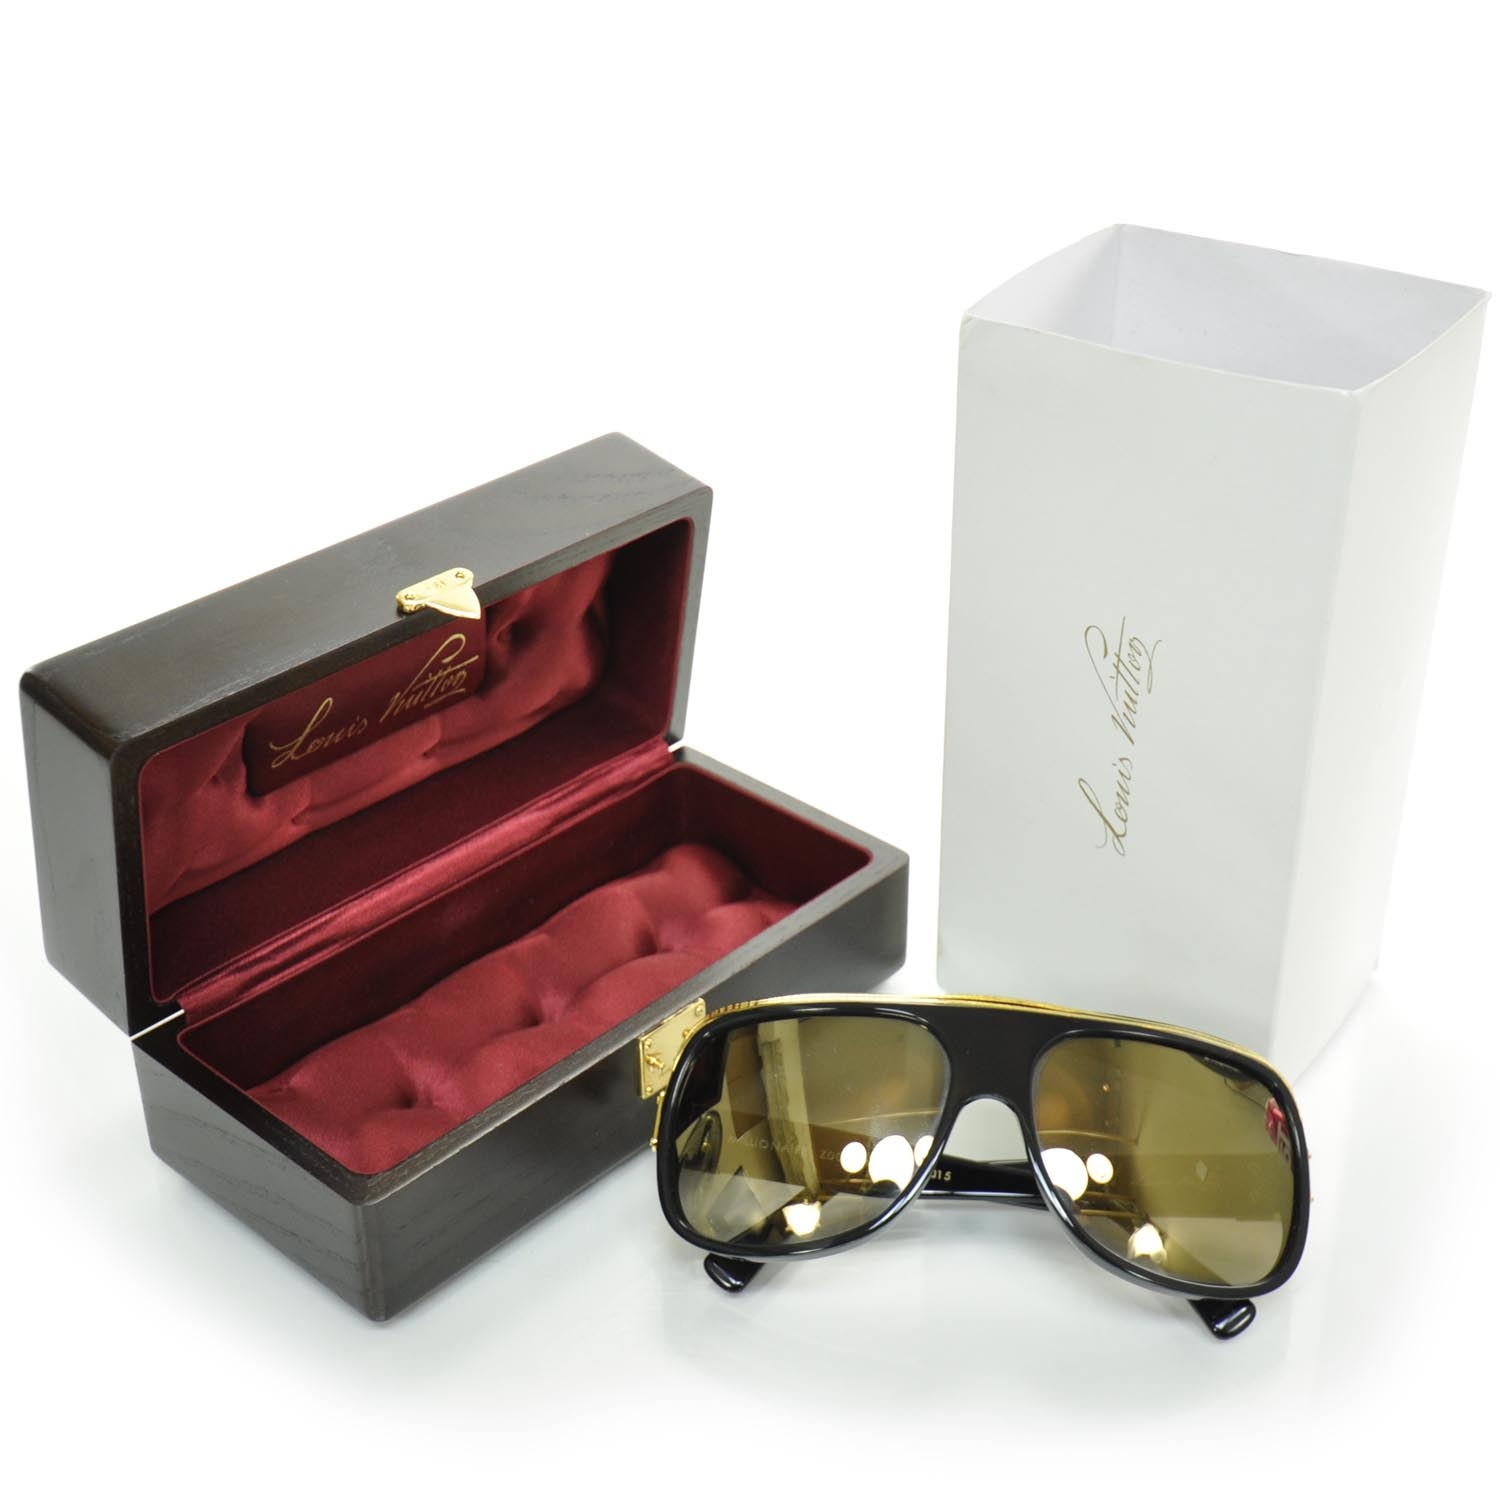 LOUIS VUITTON Millionaire Sunglasses Black w Gold Plated Lenses 22289